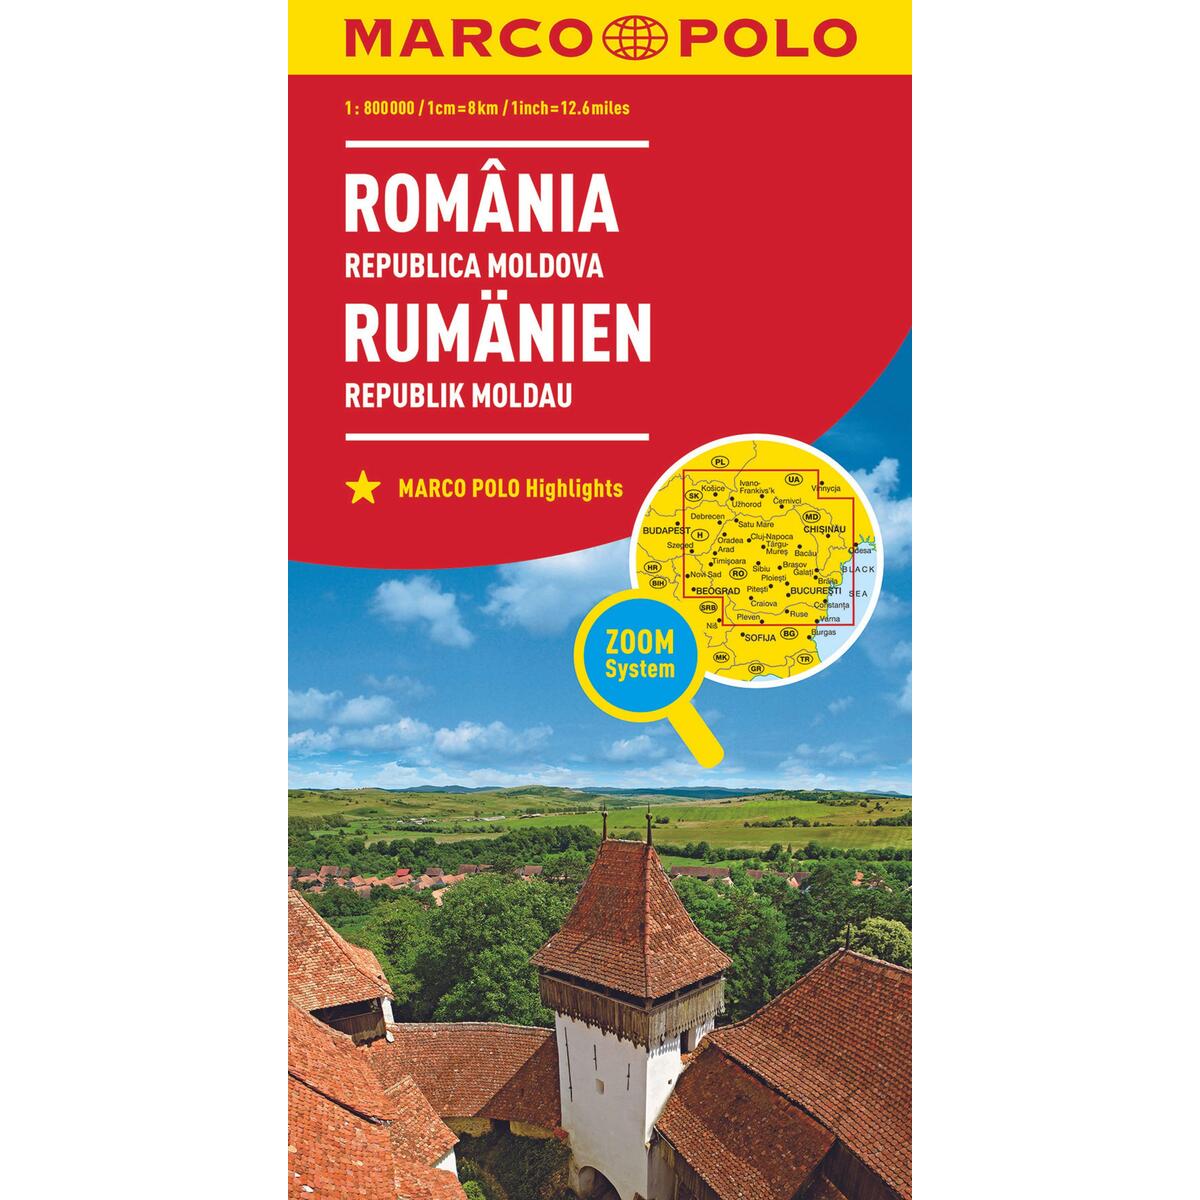 MARCO POLO Länderkarte Rumänien, Republik Moldau 1:800.000 von Mairdumont